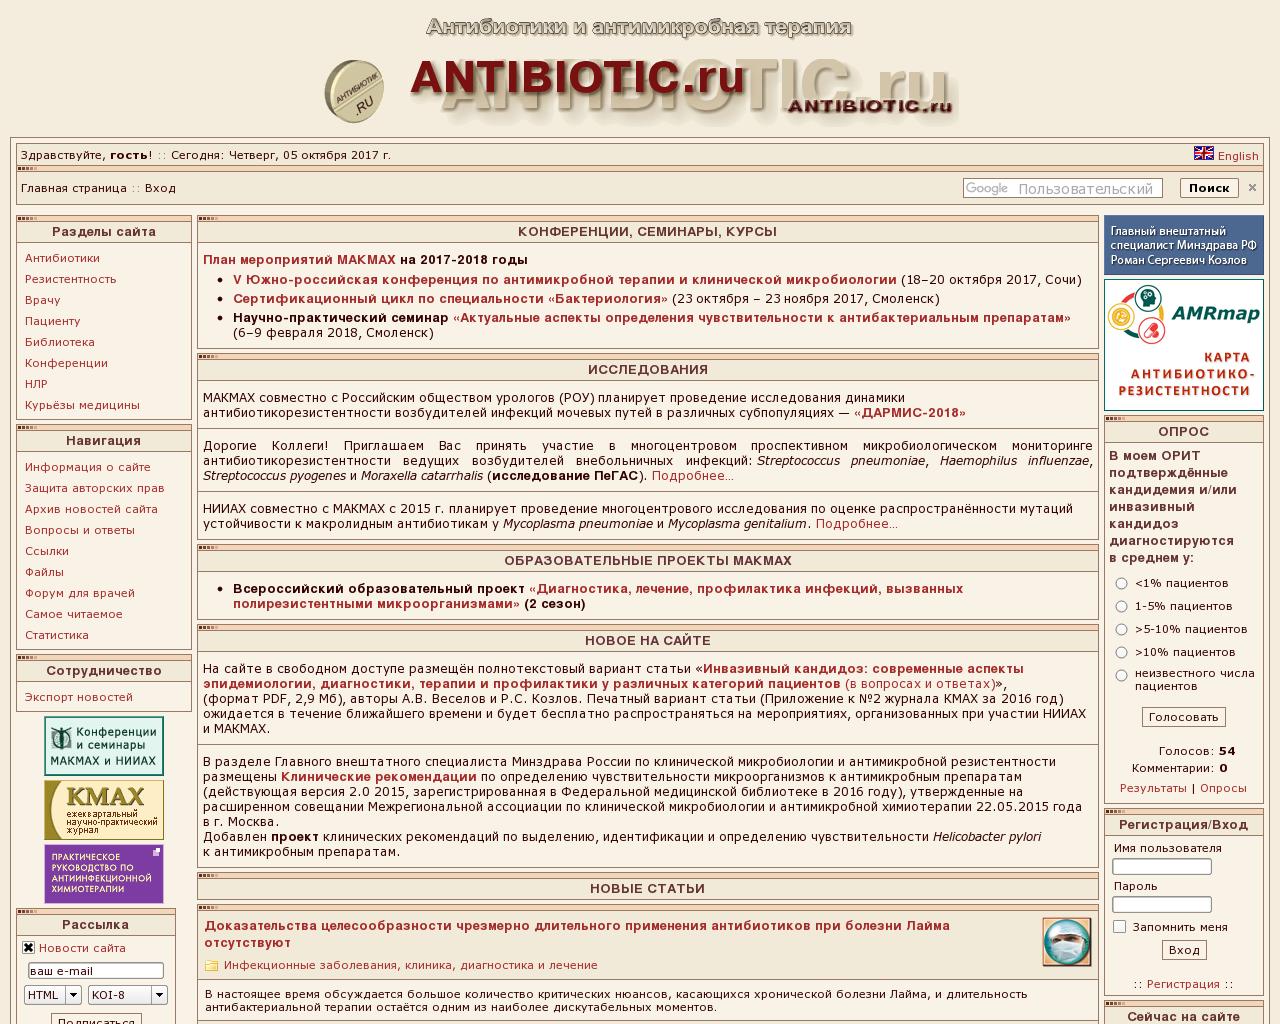 Изображение сайта microbiology.ru в разрешении 1280x1024